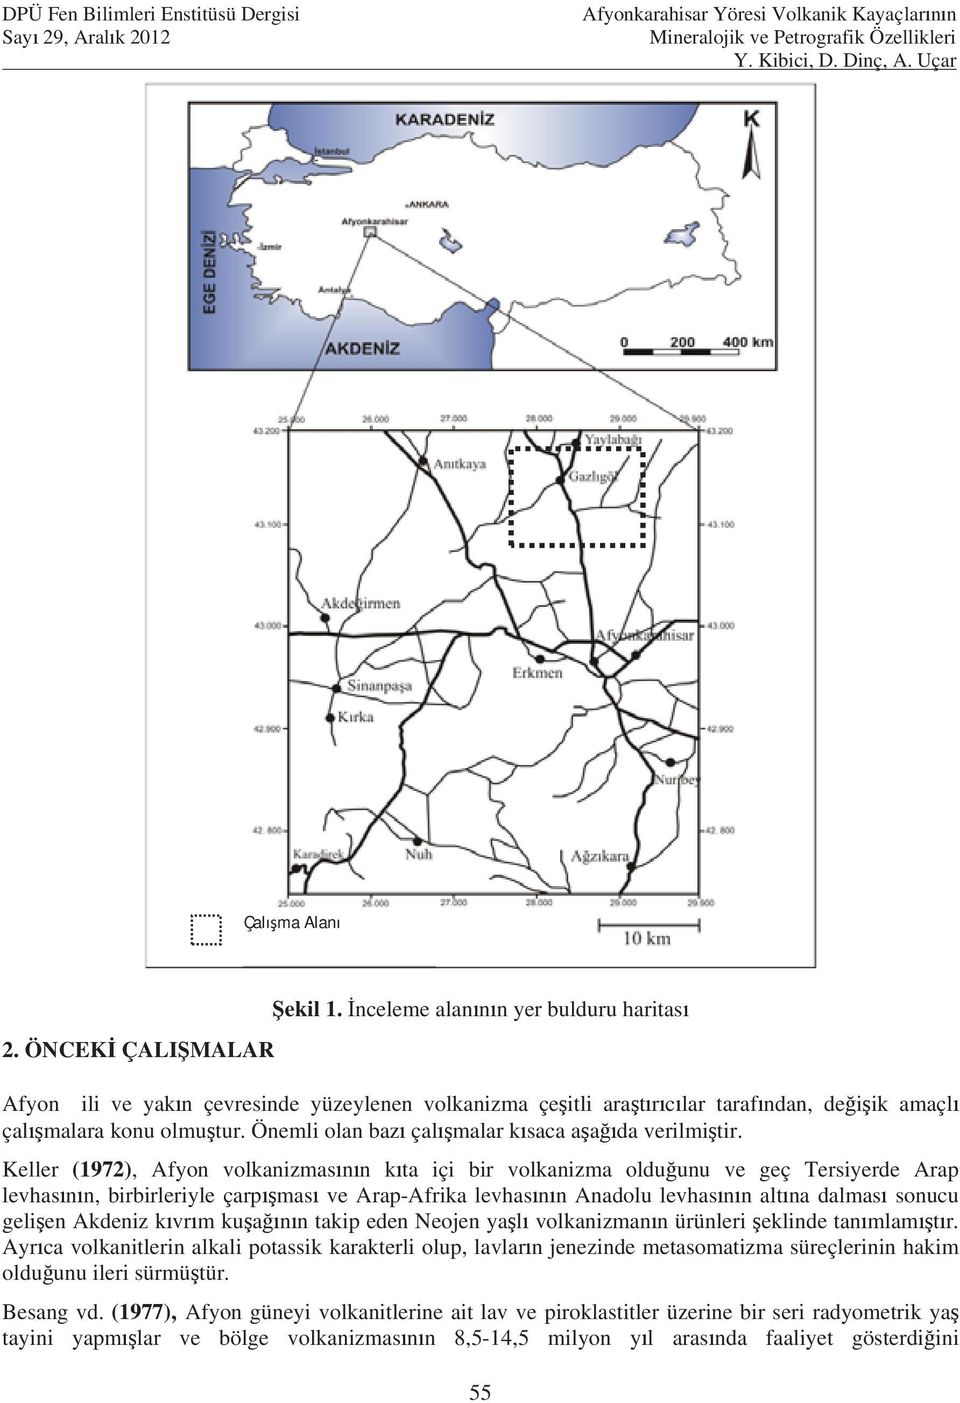 Keller (1972), Afyon volkanizmas n n k ta içi bir volkanizma oldu unu ve geç Tersiyerde Arap levhas n n, birbirleriyle çarp mas ve Arap-Afrika levhas n n Anadolu levhas n n alt na dalmas sonucu geli